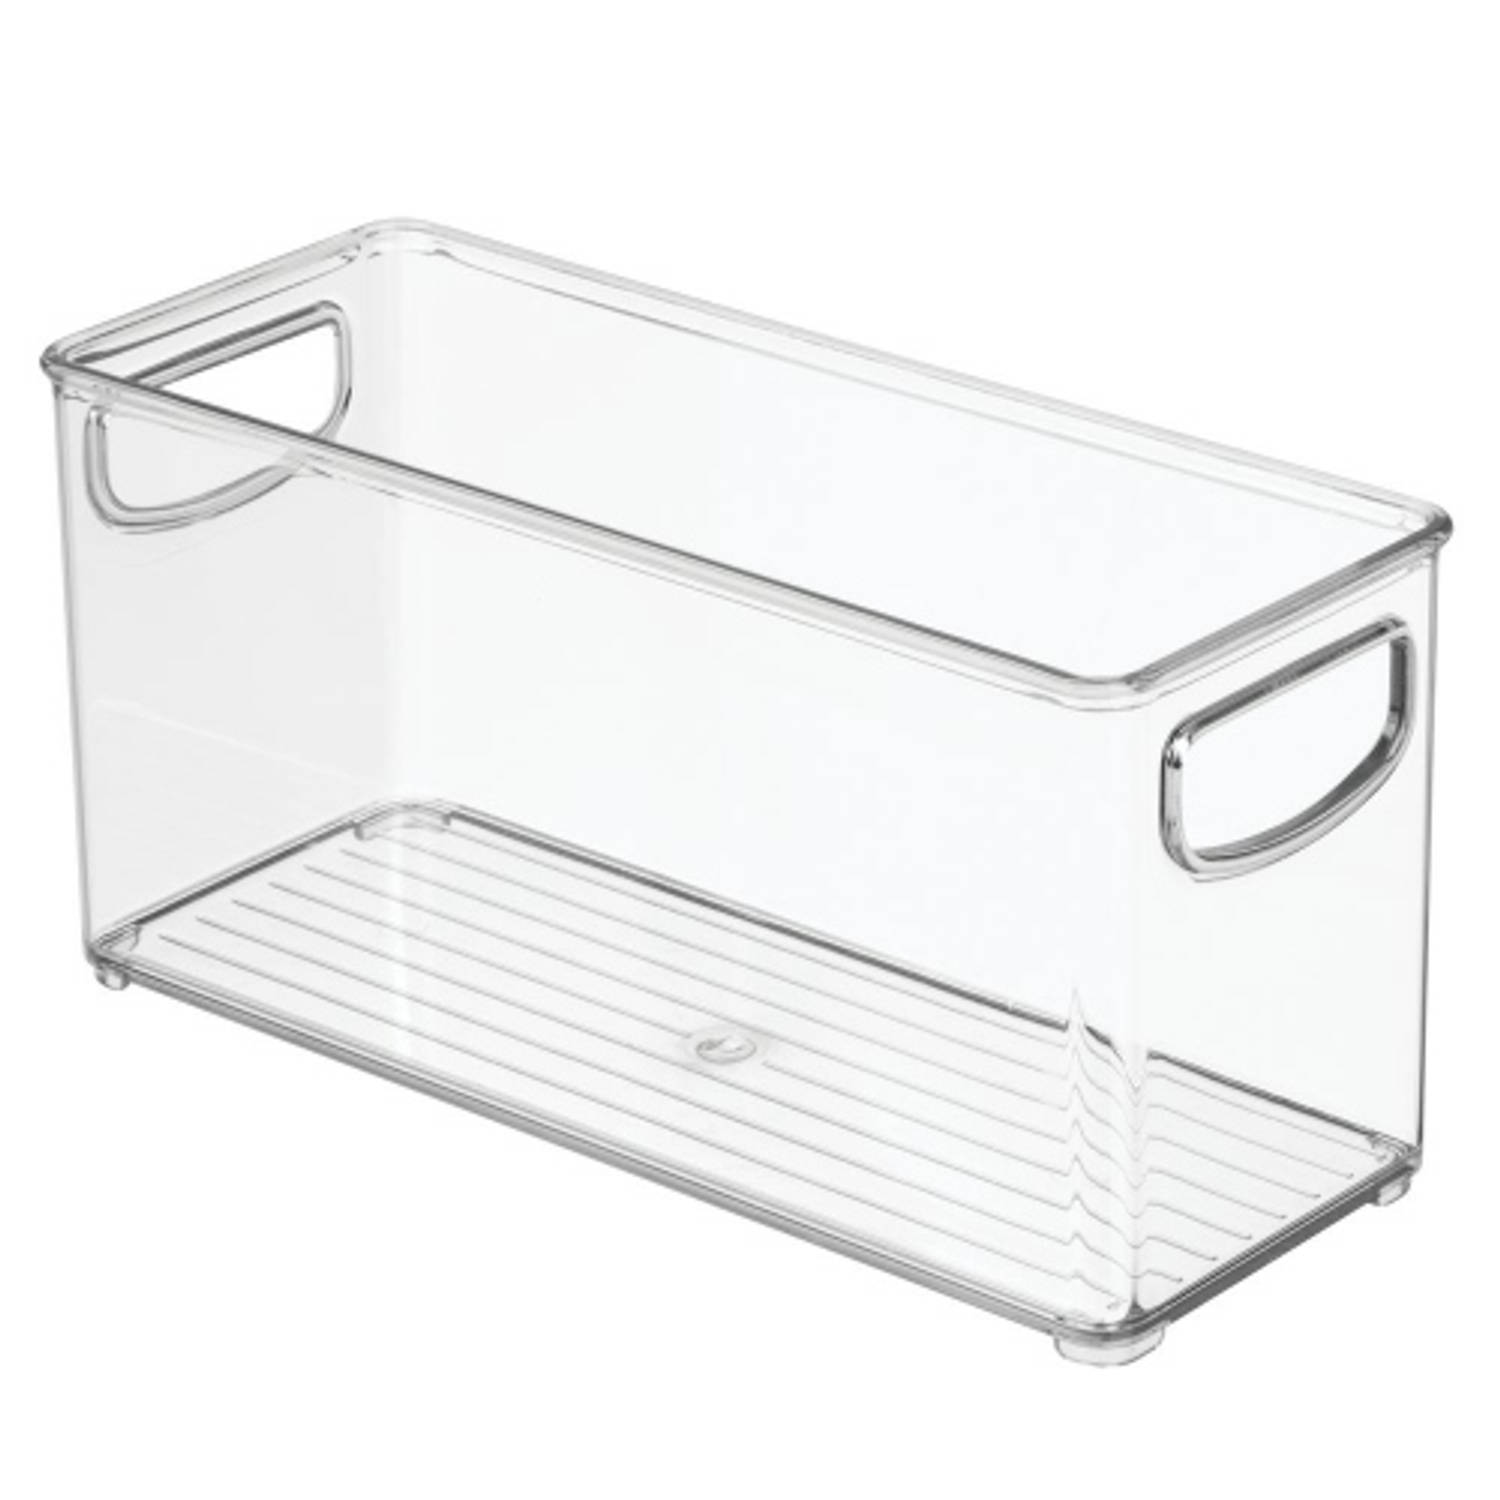 iDesign - Opbergbox met Handvaten, 10.2 x 25.4 x 12.7 cm, Stapelbaar, Kunststof, Transparant - iDesign Kitchen Binz